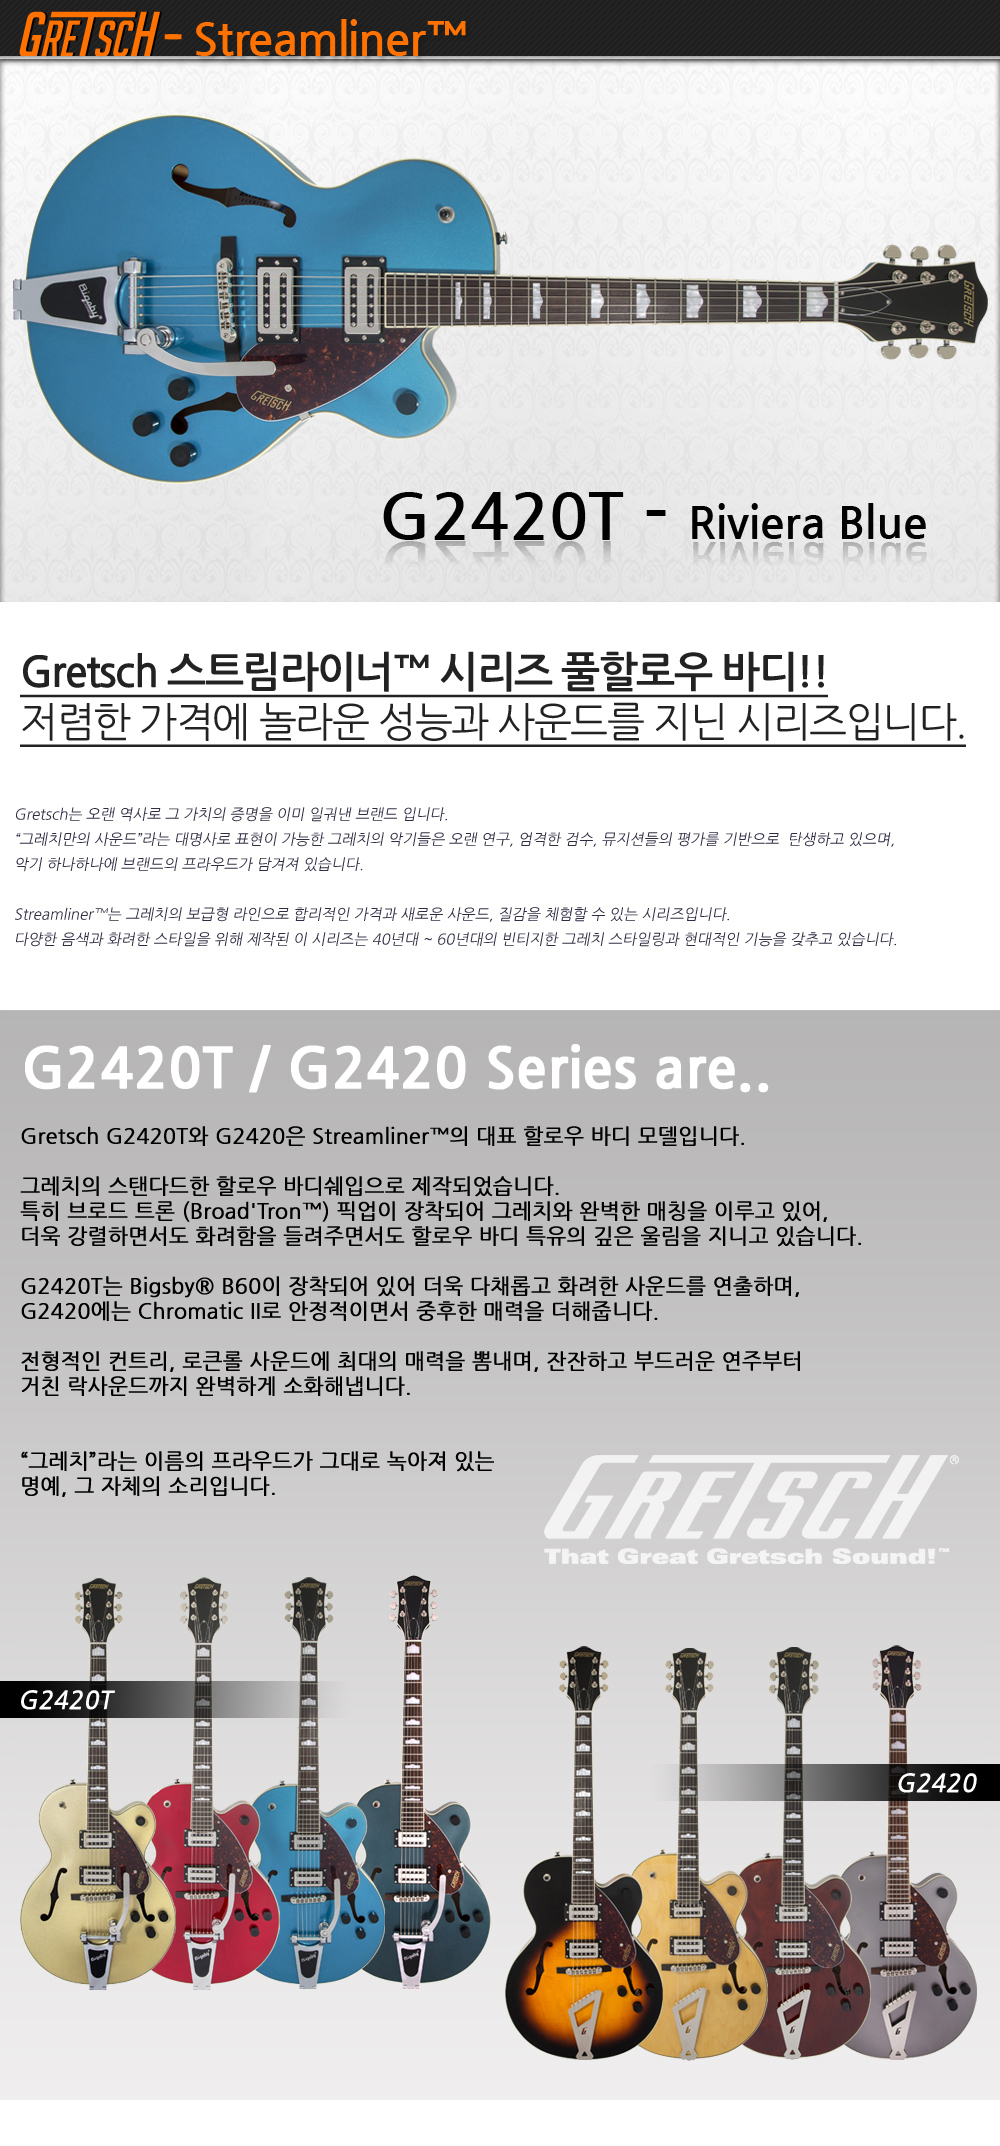 Gretsch-G2420T-RivieraBlue_1_140255.jpg